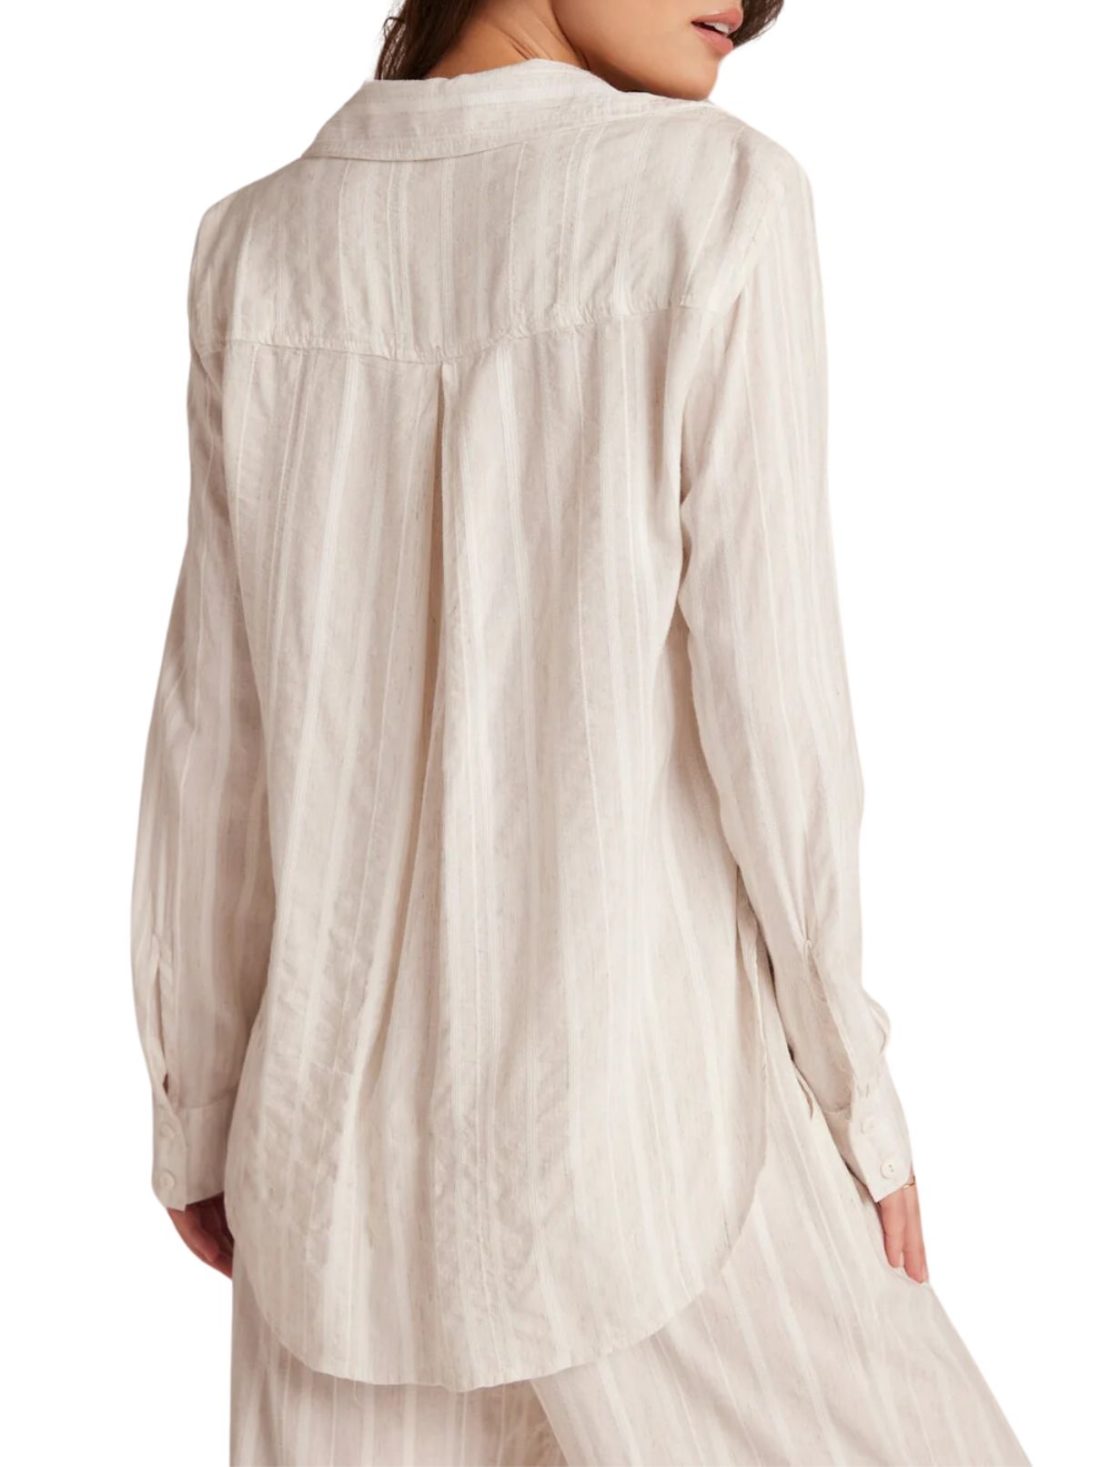 bella dahl flowy button down shirt in white sand stripe